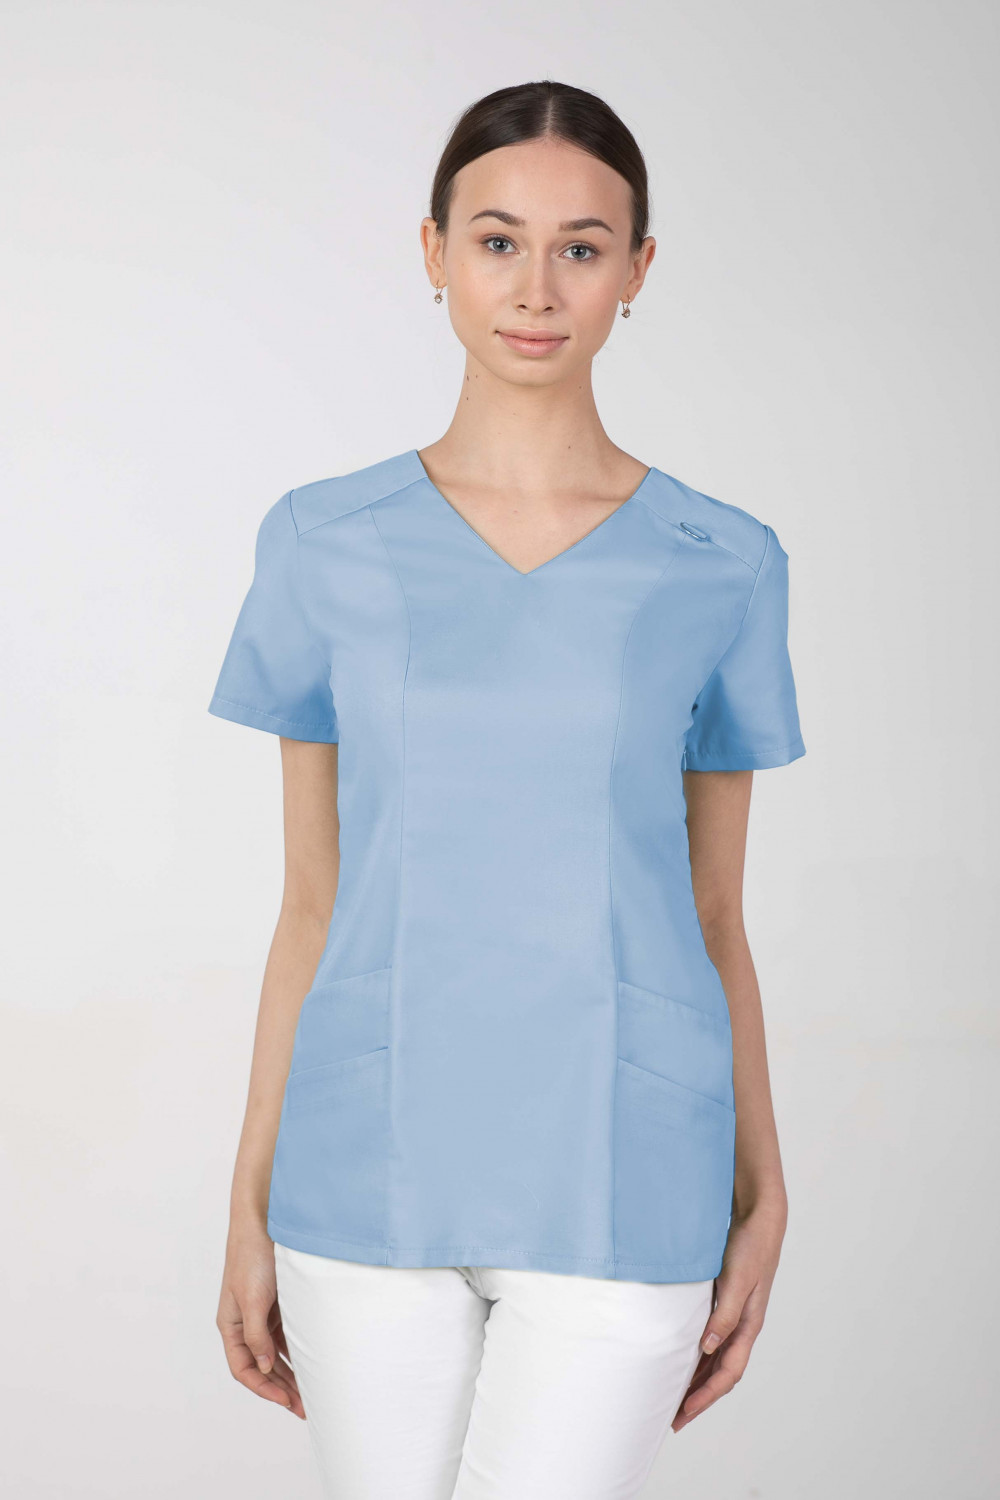 Bluza medyczna damska M-376A 26 kolorów. Błękitny